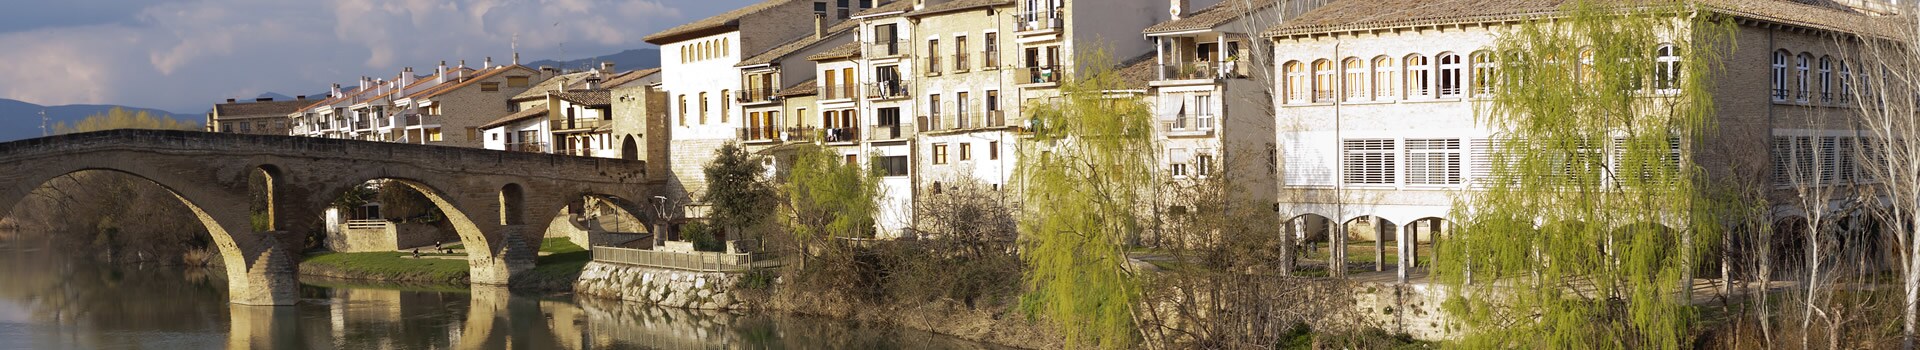 Girona - Santiago de Compostela